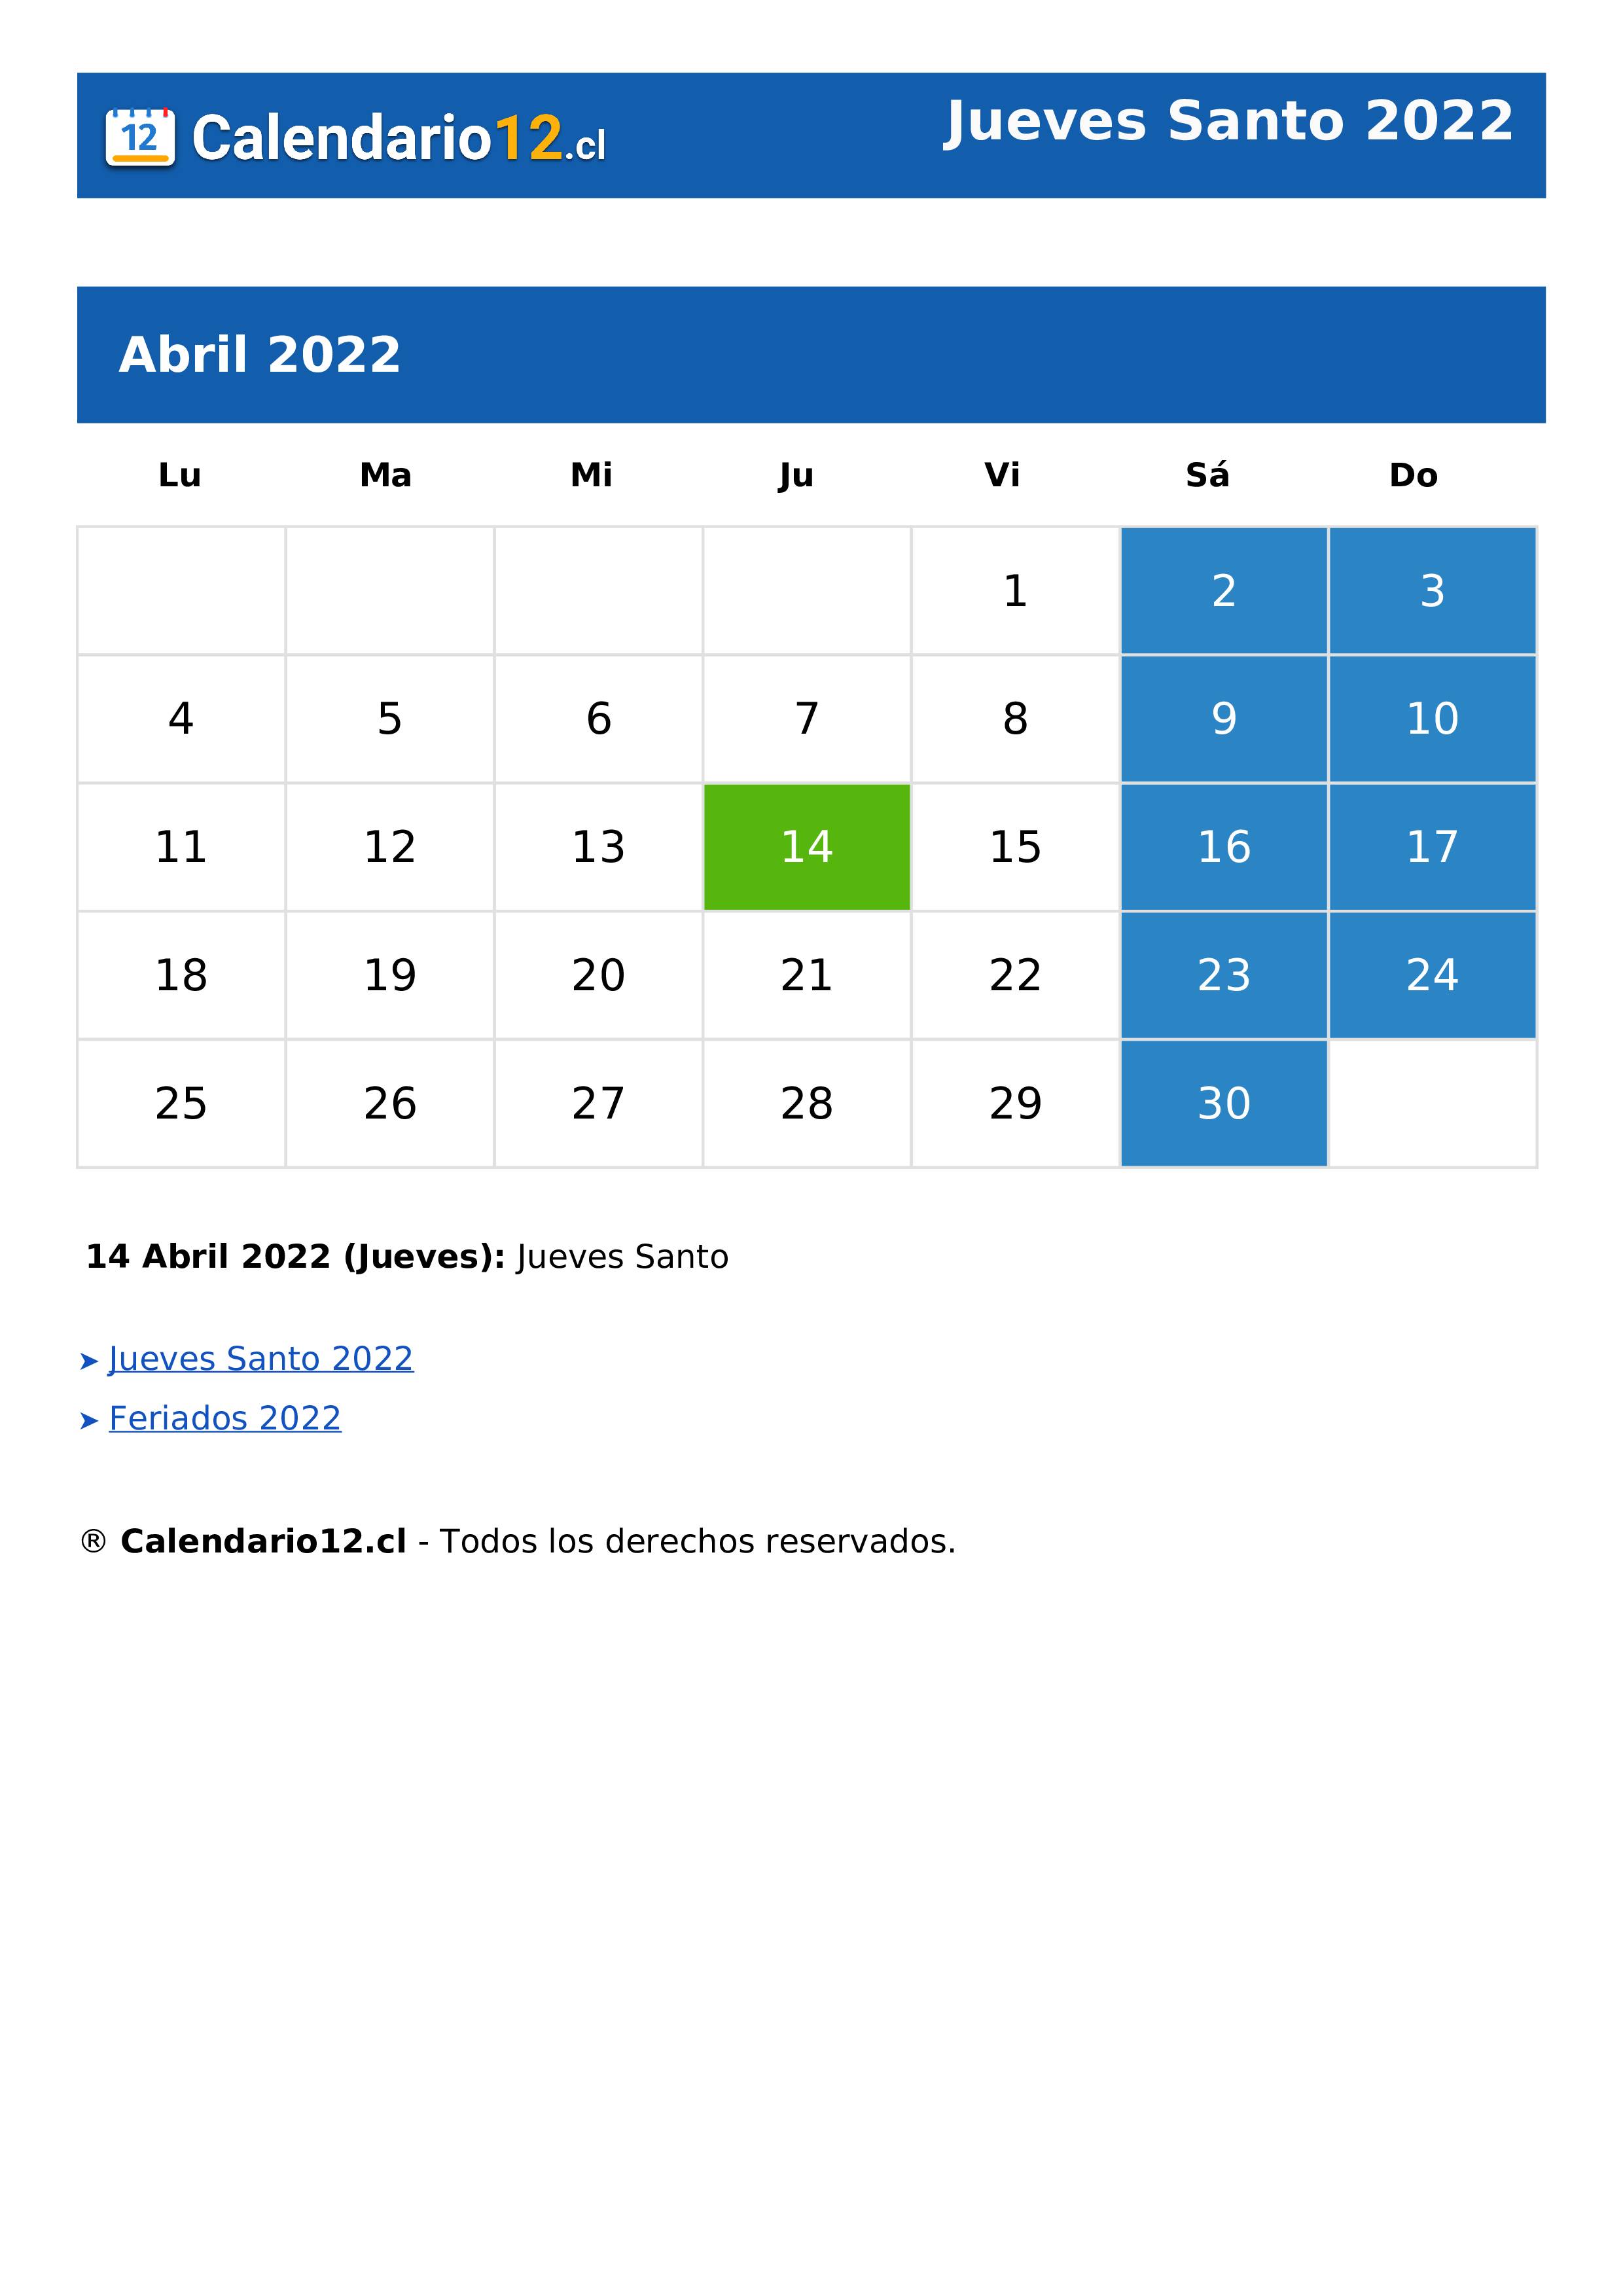 Jueves Santo 2022